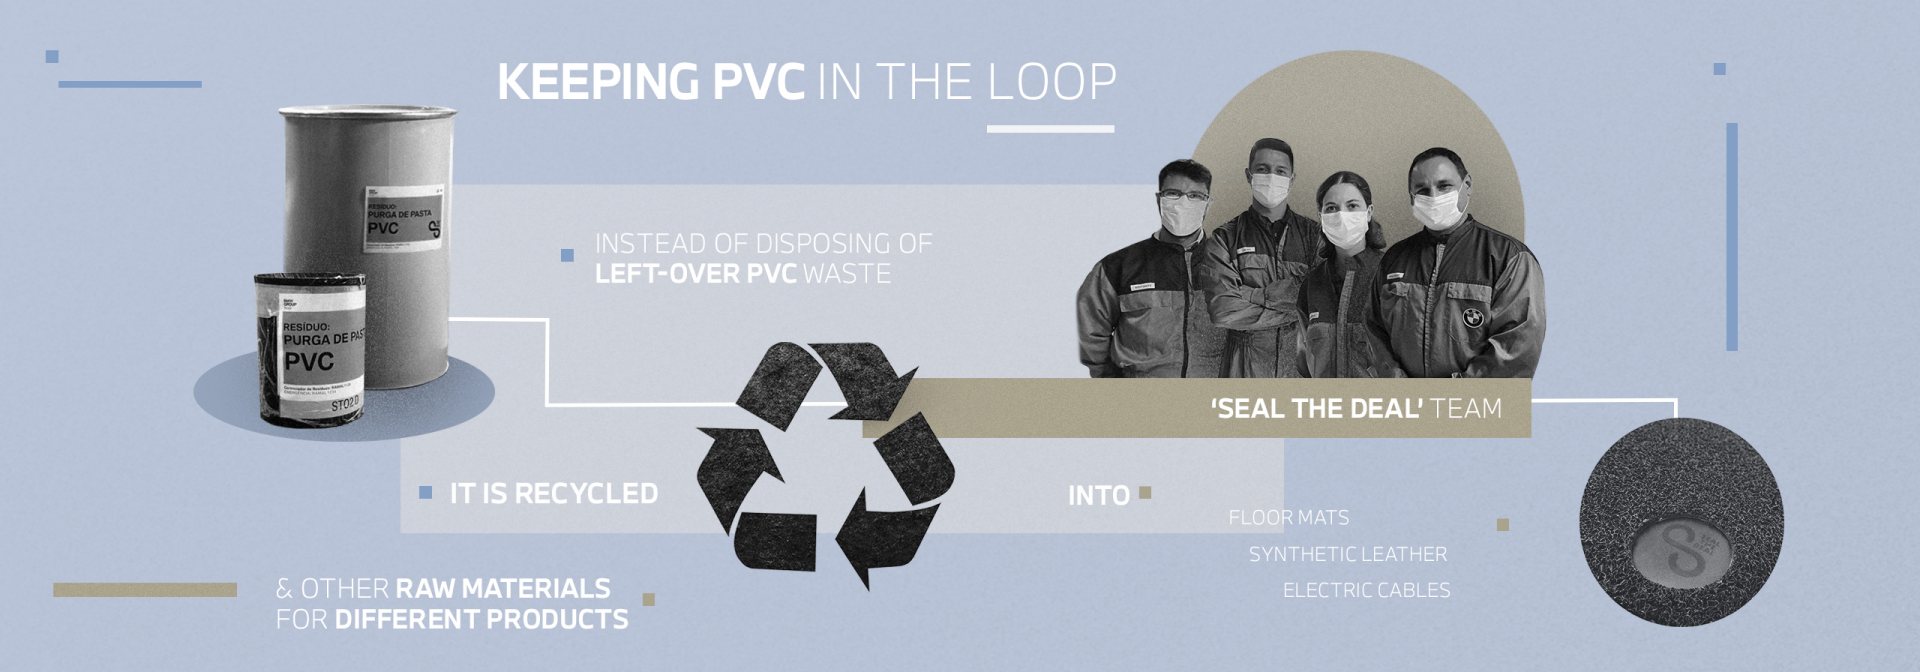 Keeping PVC in the loop Grafik